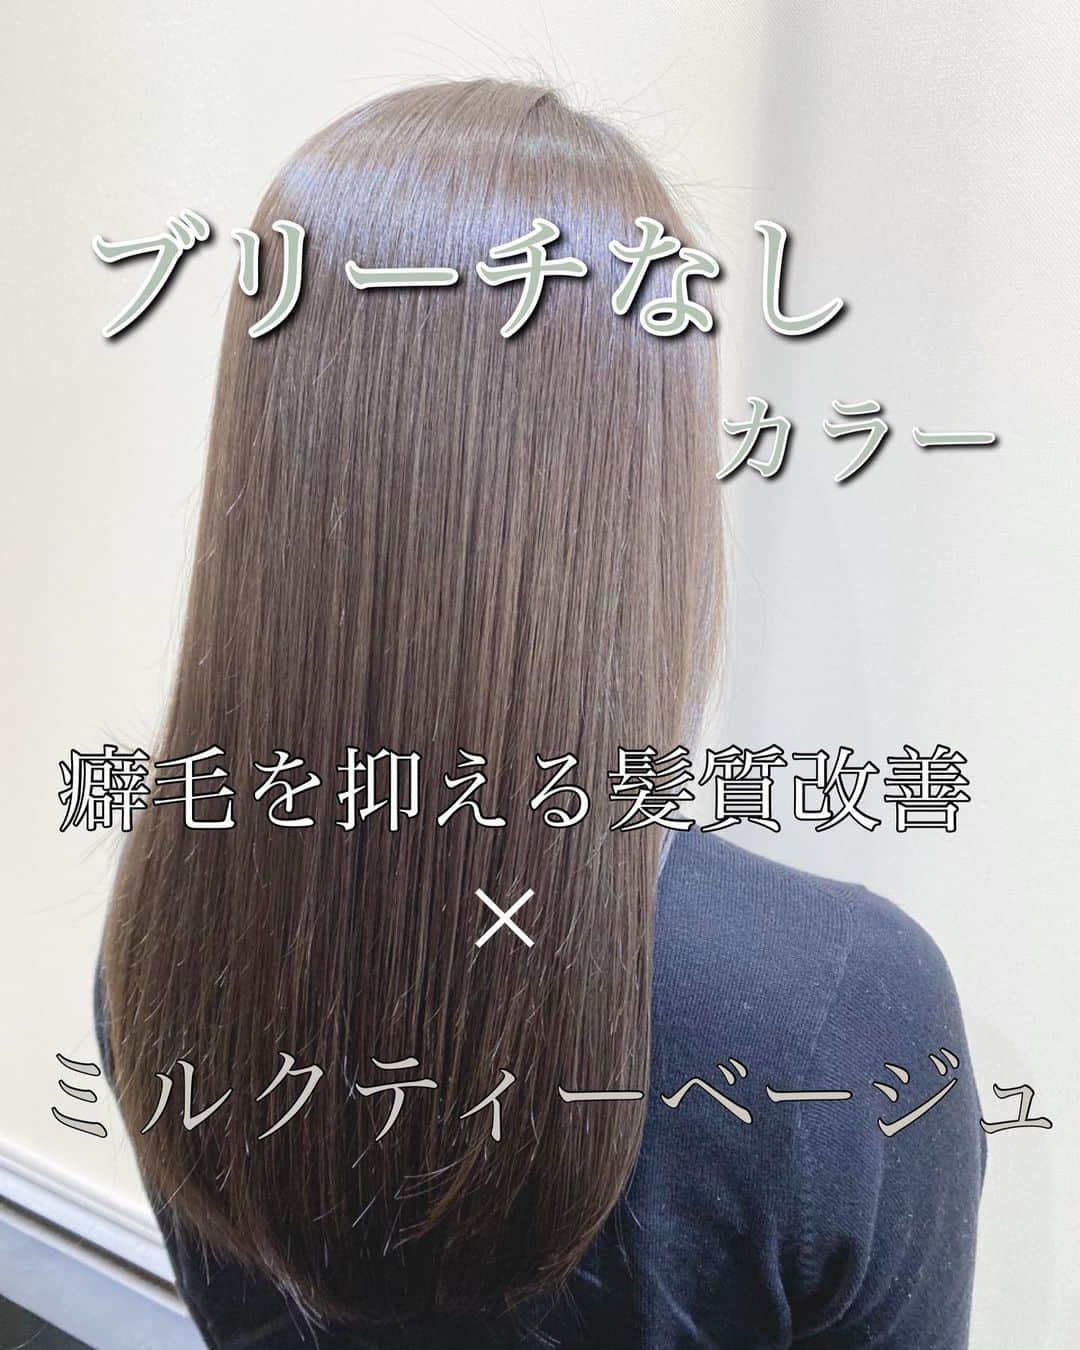 羽田野力哉のインスタグラム：「びっくりするほど圧倒的サラサラ感🌟  「毎日の髪質の悩みとはおさらば」悩みのない明日へ  髪質改善美容師の羽田野力哉（ハタボー）です。  現在、東京原宿のGO TODAY SHAIRSALON原宿ステラ店で髪質に悩める女性を助ける美容師として、活動しております。  僕は髪質改善カラーと髪質改善トリートメント、できるだけダメージをおさえたブリーチと縮毛矯正を得意としており、お客様本来の髪の美しさを引き出す事に全力を尽くしております  もしあなたの髪に艶が無い、痛みやクセ、広がりやパサつき白髪で悩んでいましたら専門美容師にぜひ一度お任せください。  では、あなたの魅力を最大限に引き出し、あなただけの本来の髪質を創る専門家のこだわりをご紹介します。  1️⃣丁寧なカウンセリング  初めての方でも安心して施術を受け、本来の姿になって頂けるように時間をかけてカウンセリング致します。  あなただけの髪質を作るにはカウンセリングが非常に重要となります。  ・髪がパサつく  ・髪引っかかる  ・女性らしい艶髪にしたい  ・まとまりが悪い  ・癖で広がり、ツヤがない  ・乾かすだけで素敵になりたい  などなど、髪のお悩みや施術に関して不安な事や過去に納得がいかなかった点など、なんでもご相談ください。  これまでに専門家として多くの悩みを解決してきた実績があるので、あなたを艶髪に導くための豊富なご提案ができます。  2️⃣完全オーダメイドの髪質改善カラー  あなた本来の髪質を作るには一人一人の髪質やダメージなどに合わせて、専門美容師があなたの髪に最適な髪質改善のコースを組み立てる必要があります。  「毎日の悩みを本当にどうにかしたい」そんな方はぜひ一度プロにお任せください🌟  これまでに髪に悩む多くの女性を、毎日のお悩みから救って来ました  安心してお任せください。お風呂上がりに乾かしたあともまるでサロンのクォリティに。  専門家にお任せいただければ、毎日をシルクのような仕上がりに。  3️⃣技術保証  万が一仕上がりが気に入らなかった場合は無料でお直しさせていただきます。  必ず納得の仕上がりになるまで担当させtいただきますのでご安心ください。  4️⃣予約制の完全個室の空間  完全プライベート空感になります 施術を受けて頂くだけでなく、ここで過ごす時間が特別なものであって欲しいと考えており  リラックスした時間を過ごしていただく為に、ご予約は人数制限を設けております。  髪質改善美容師が一人一人に集中し、丁寧にマンツーマンでご対応いたします。  心から安心して施術を受けていただけると幸いです。」